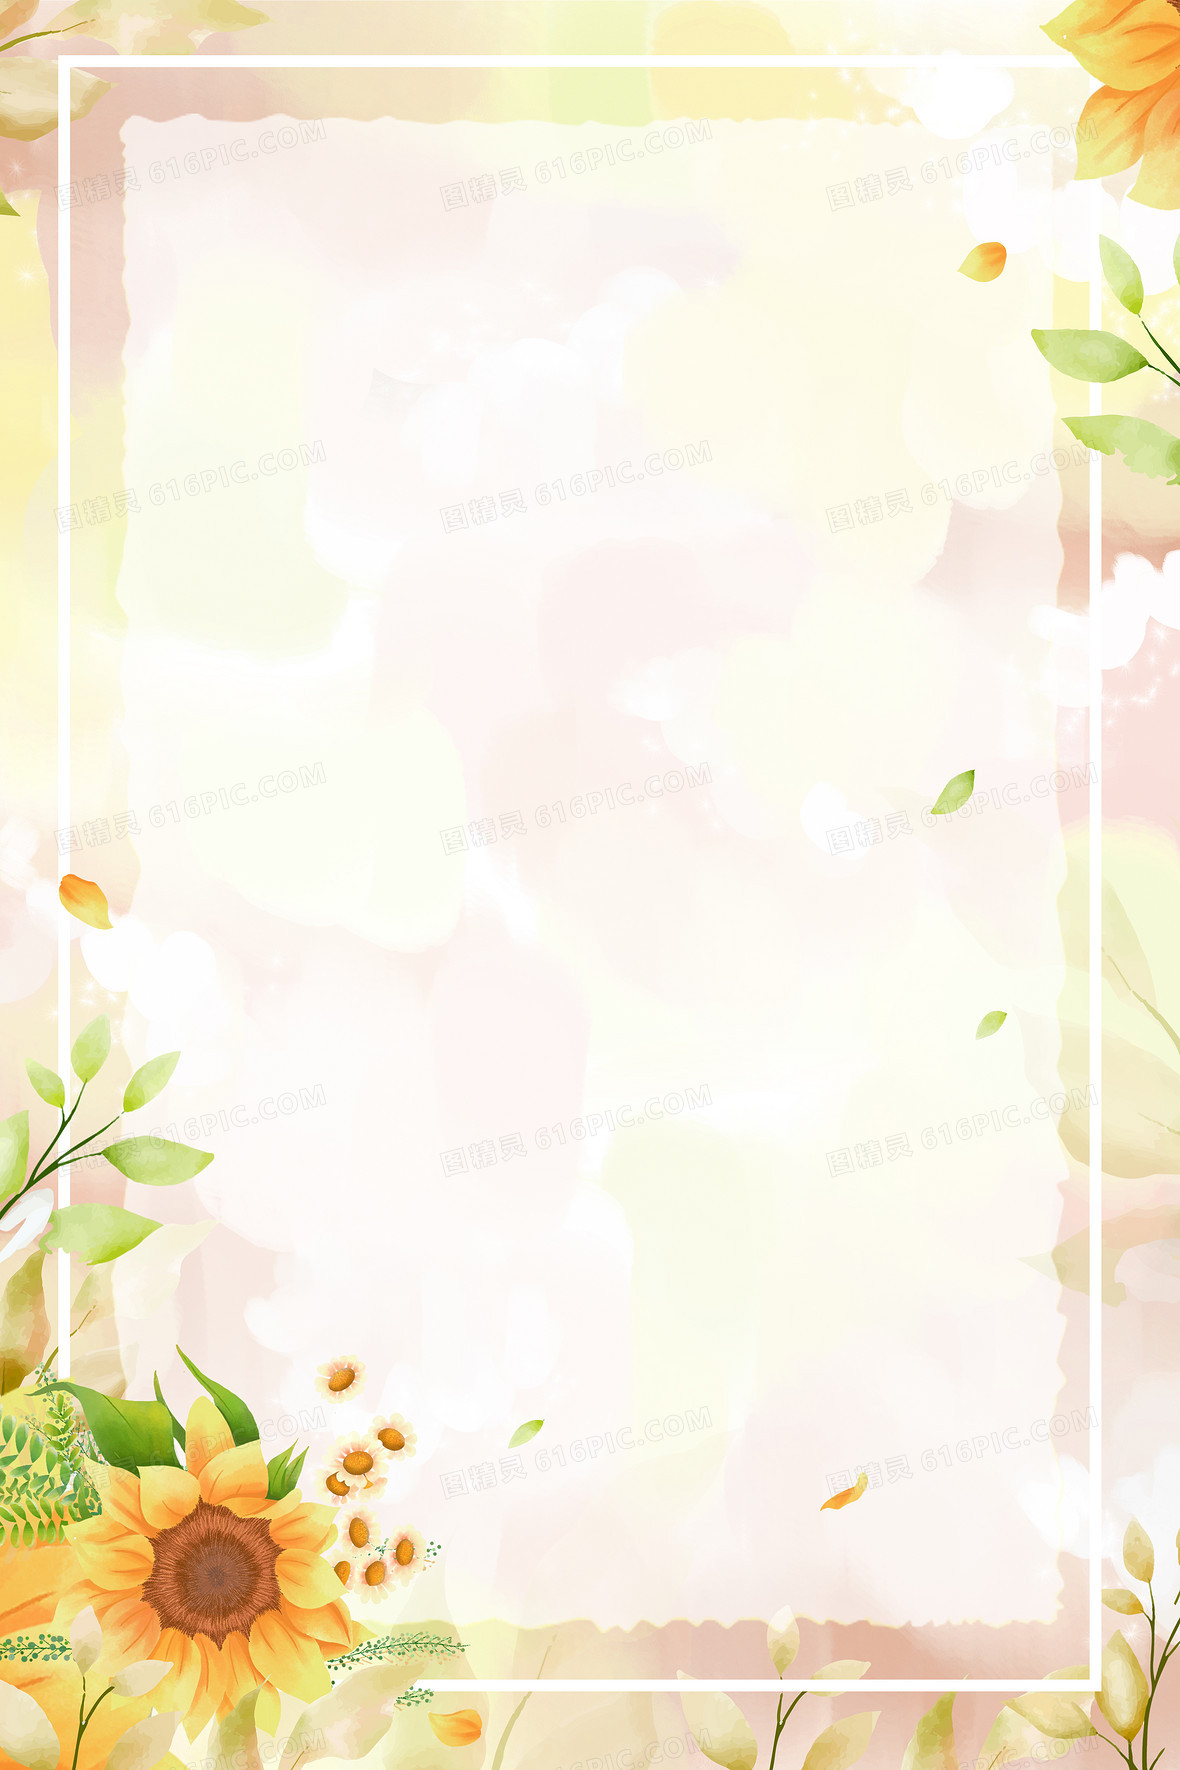 插画风向日葵植物边框背景jpgpsd向日葵卡通可爱竖版背景jpgpsd手绘